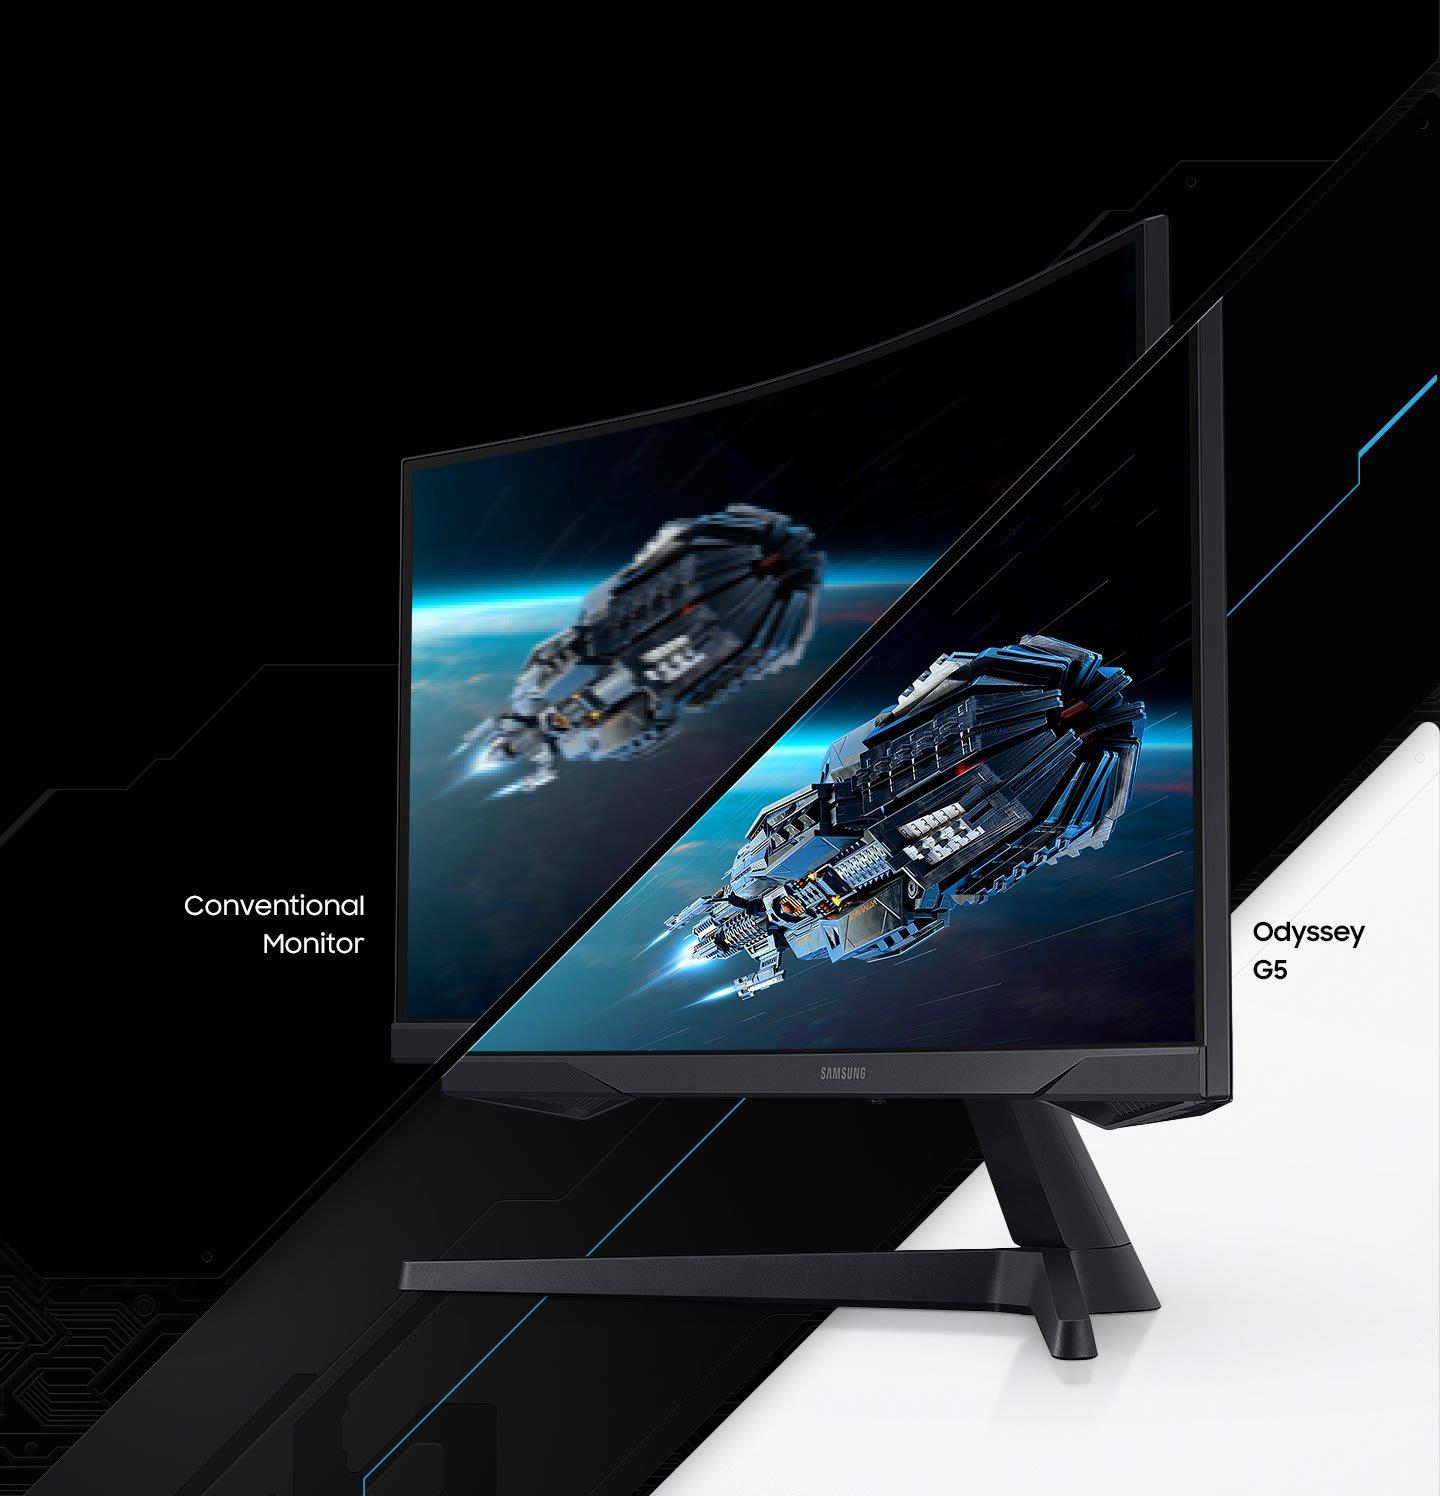 Samsung Odyssey G5 27-in 2560x1440 144Hz Gaming Monitor